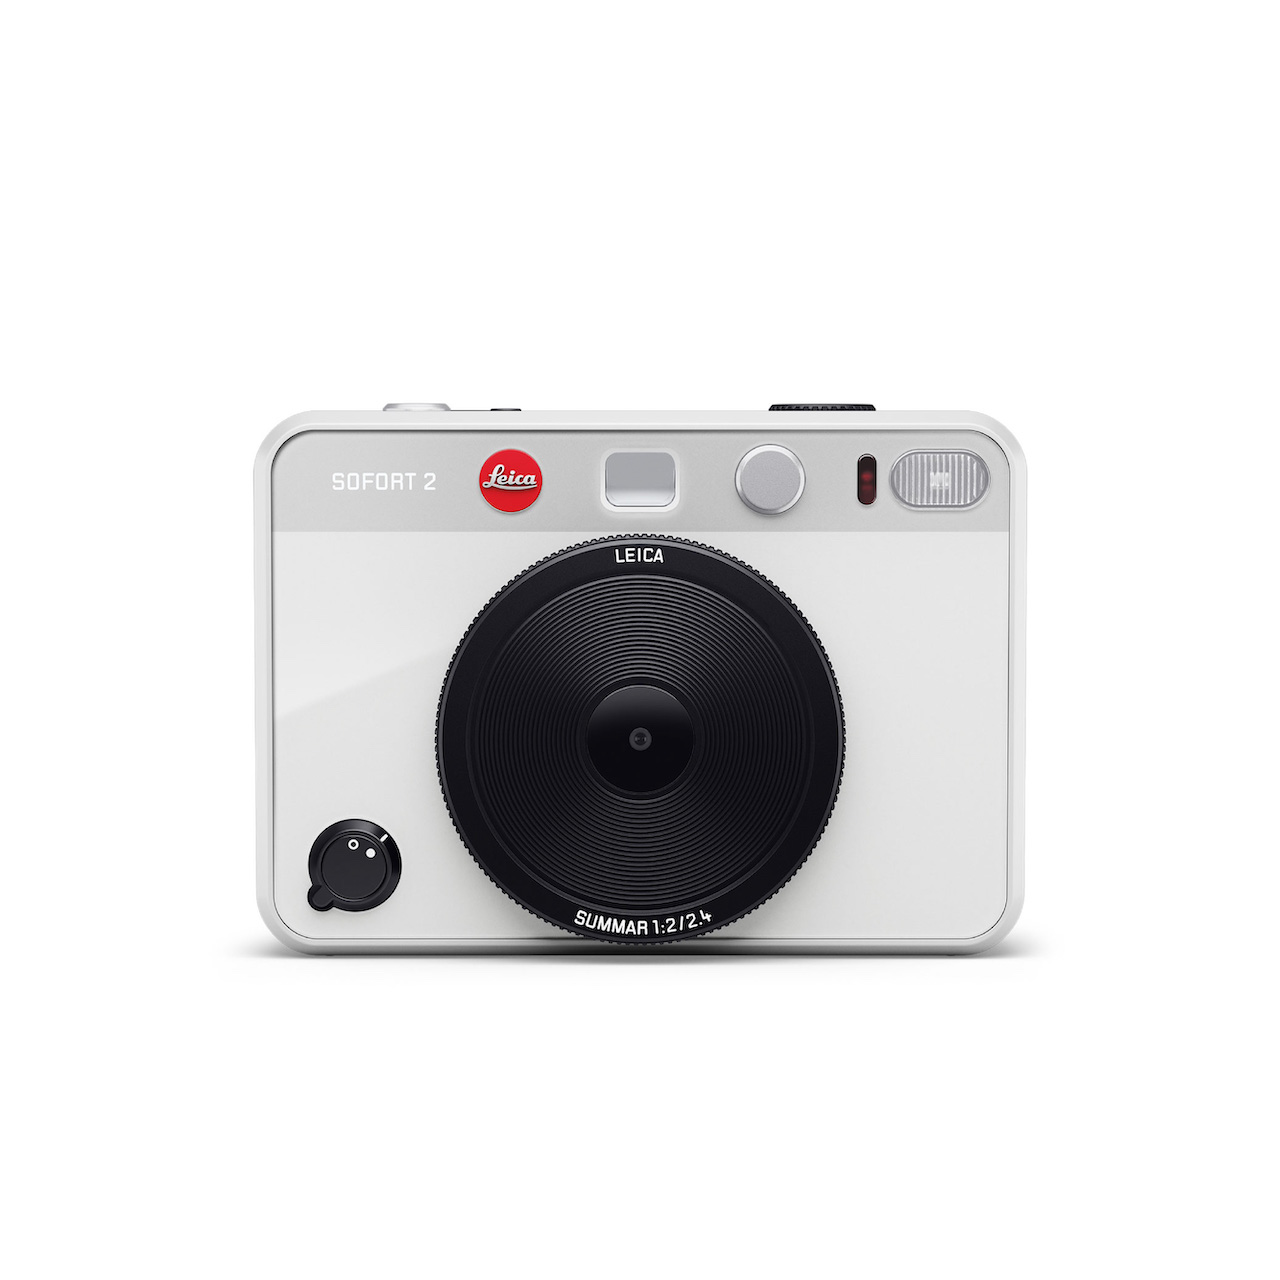 ライカ/ゾフォート2/ホワイト / Leica SOFORT 2 White - ENZO SHOP